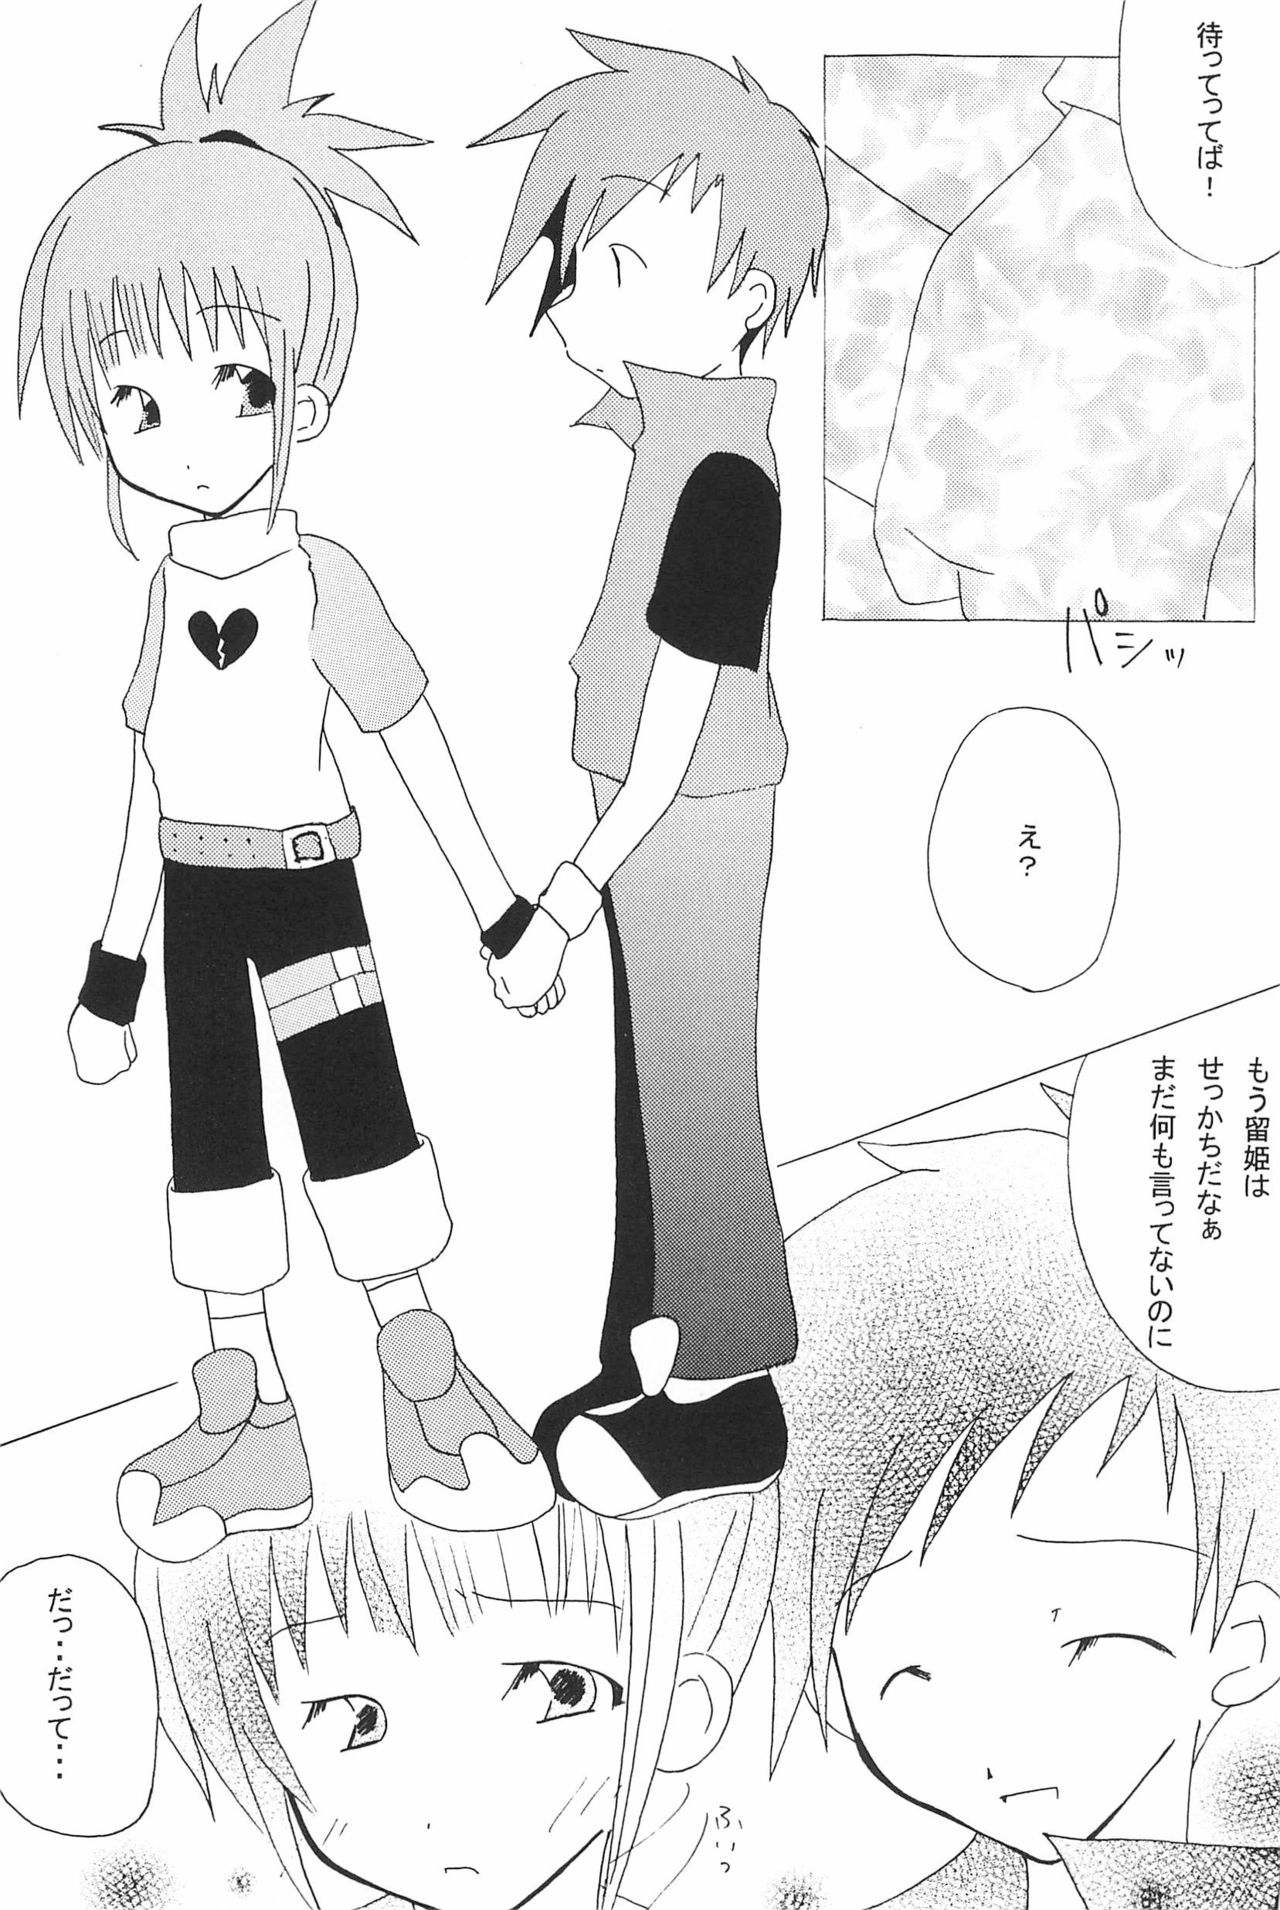 (SC15) [LeeRuki Anthology Jikkou Iinkai (Various)] LeeRuki Anthology J&R REPORT (Digimon Tamers) 37